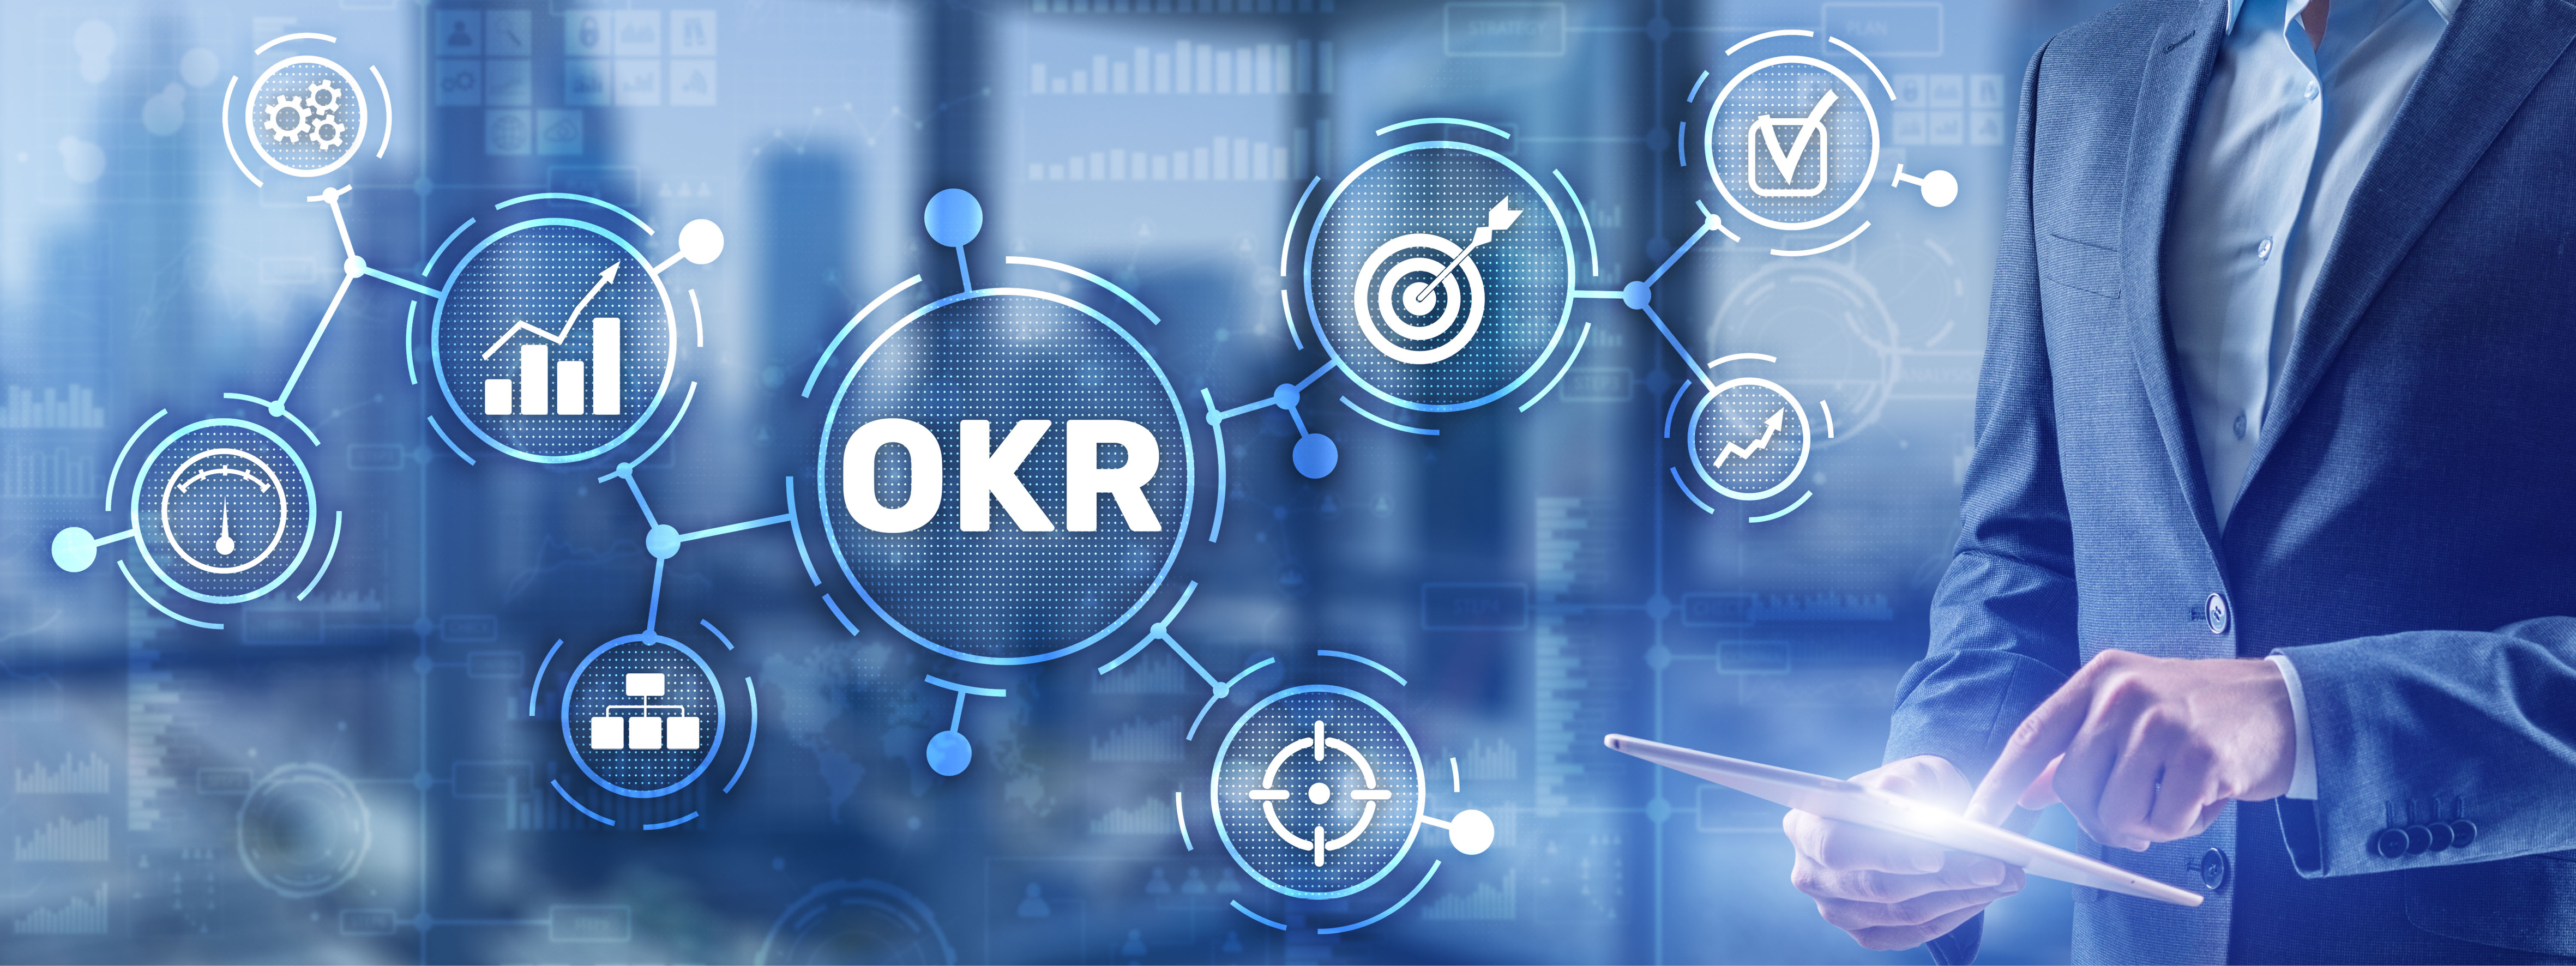 Seminar Seminar OKR - Objectives and Key Results